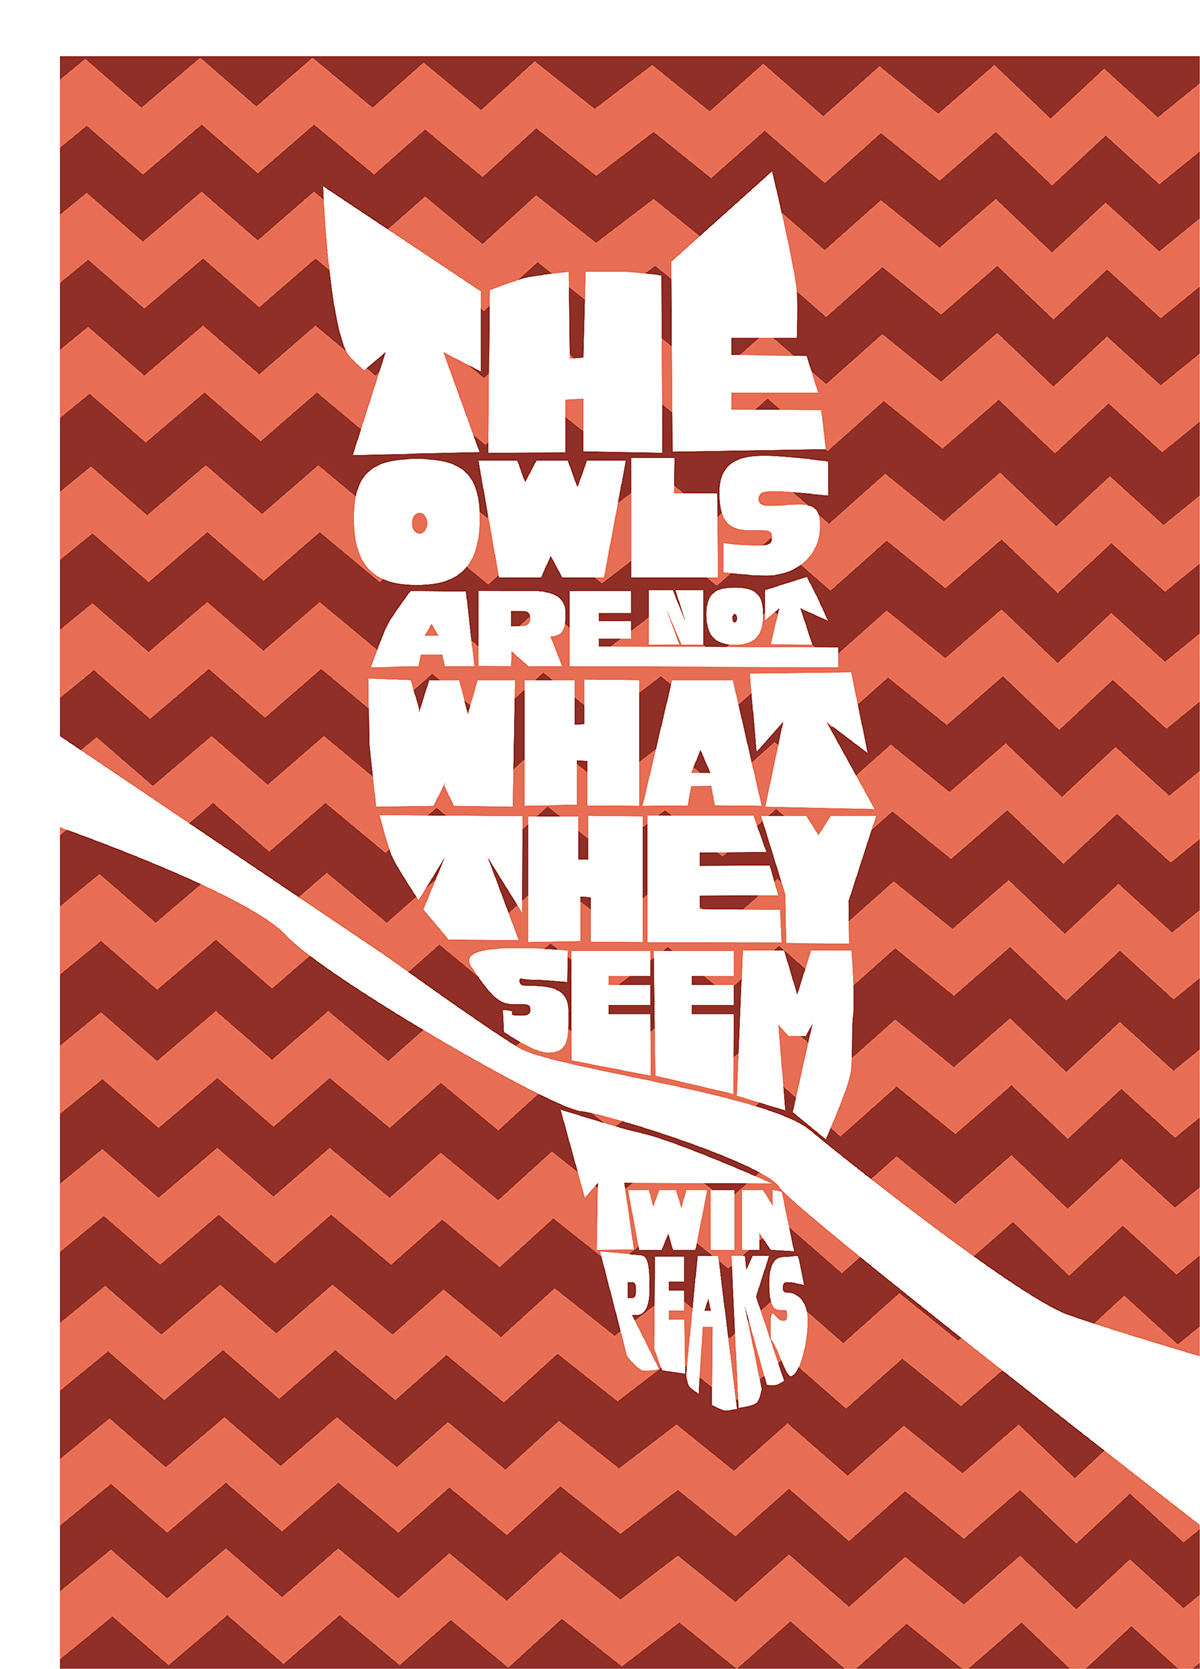 twin peaks owls type